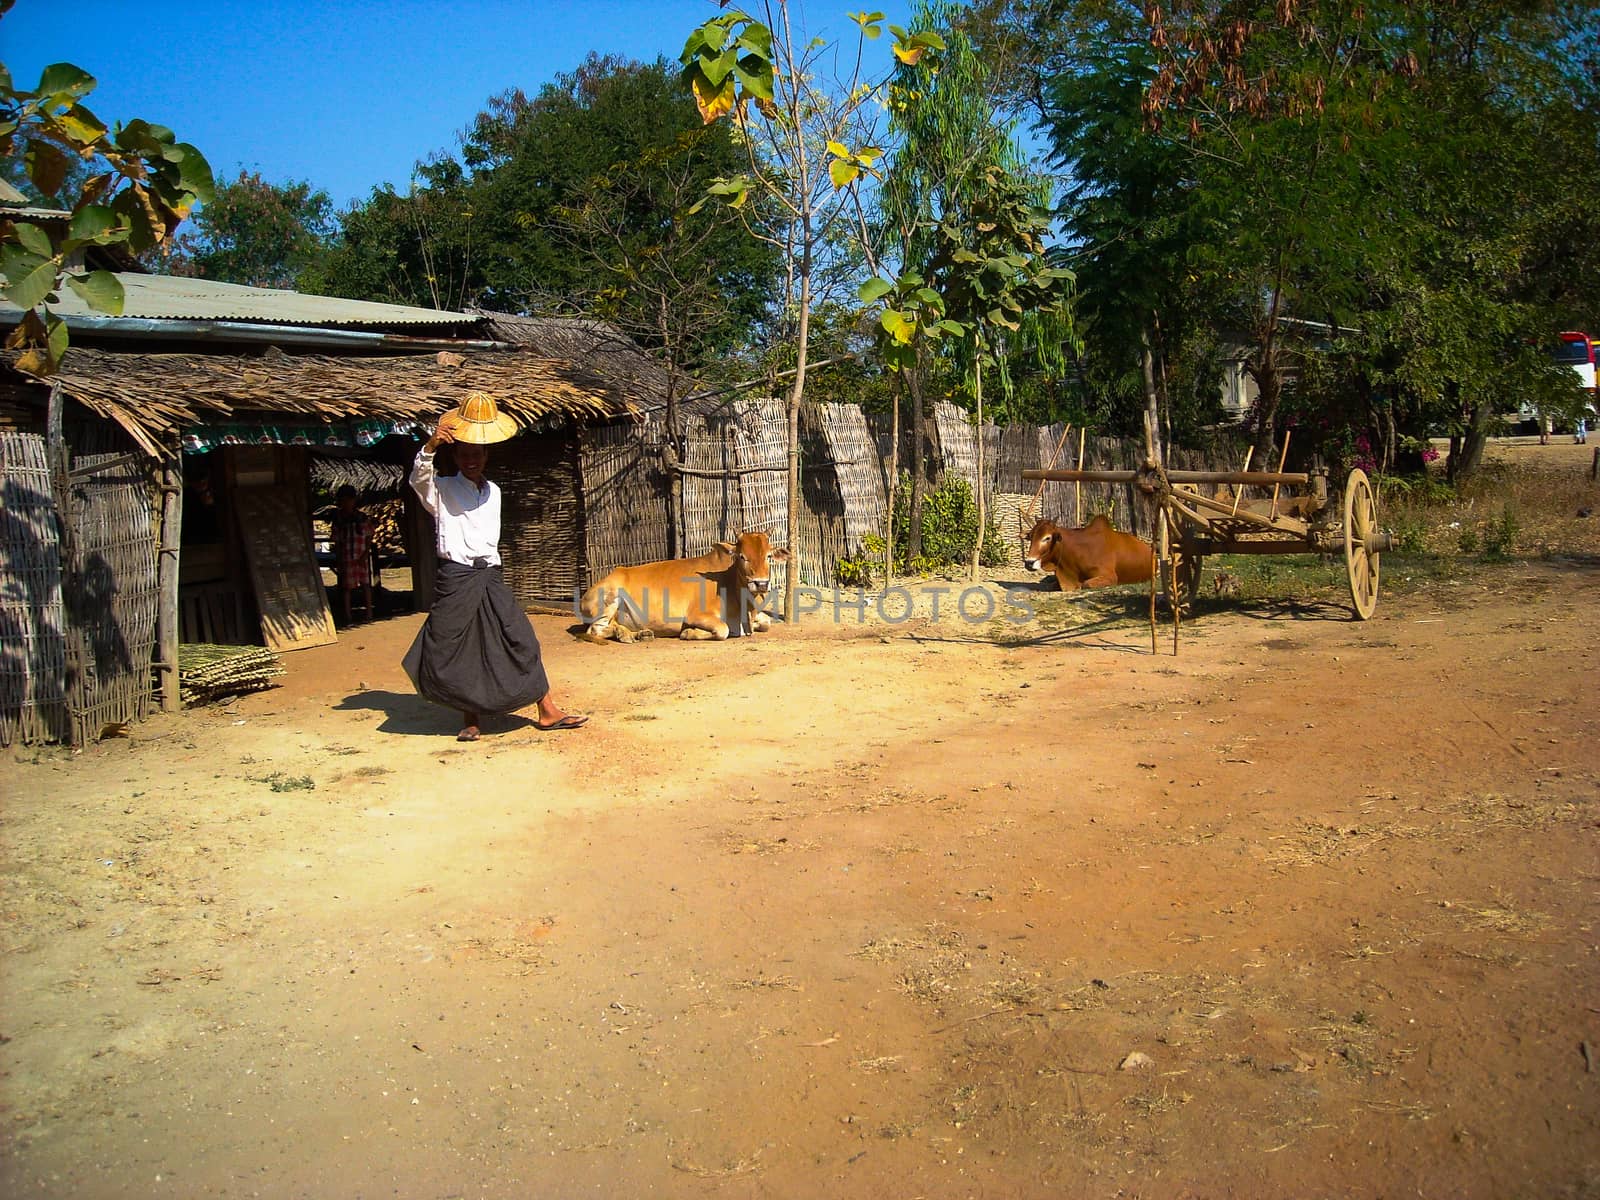 a farmer in burma by Tevion25